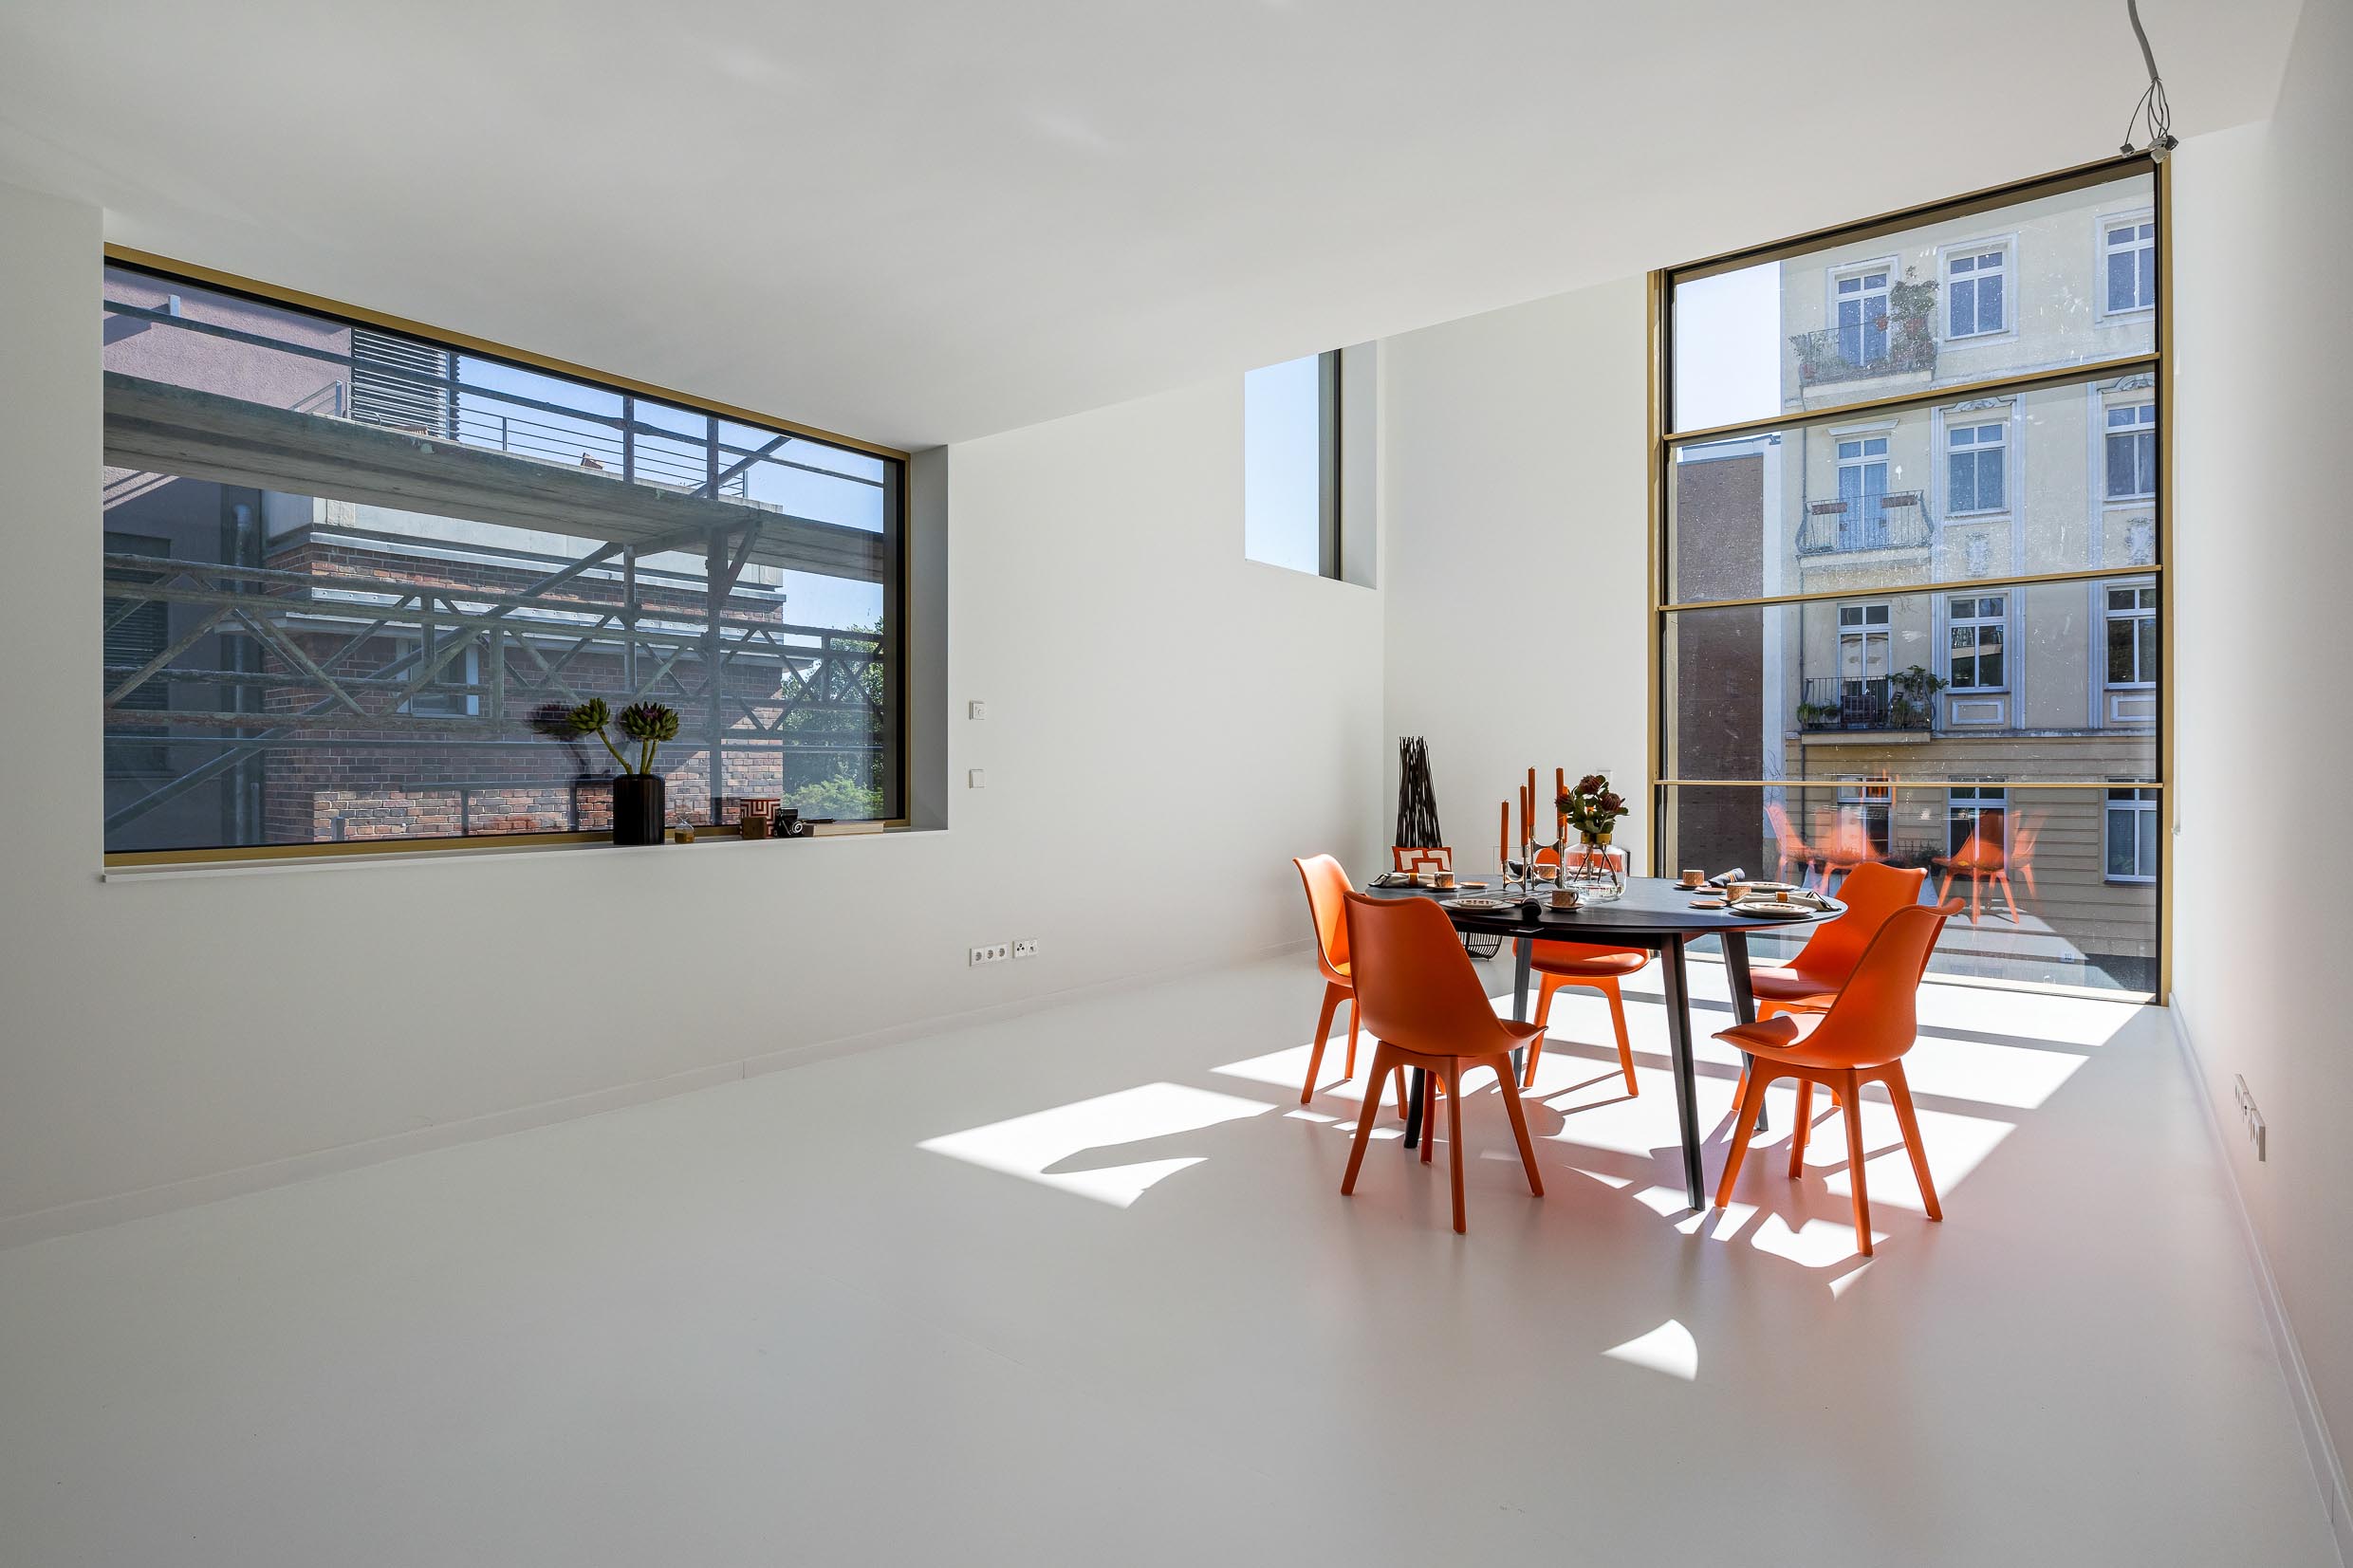 Architektur Highlight in Berlin Mitte zum Kauf